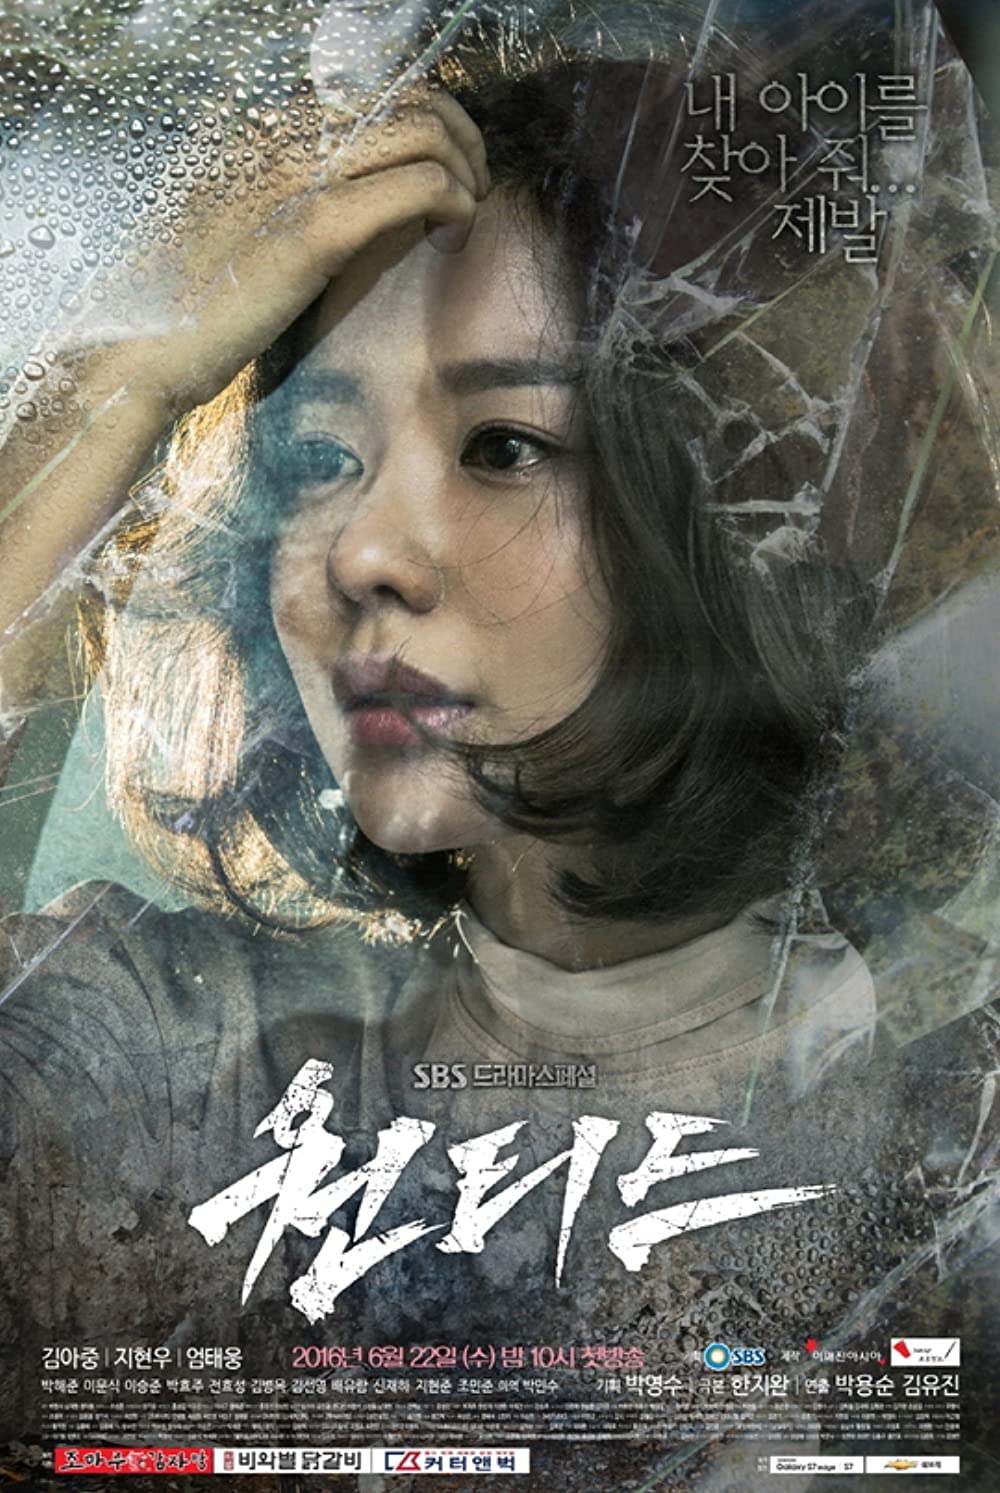 11 Drama Korea kisah kehidupan ibu, penuh pengorbanan